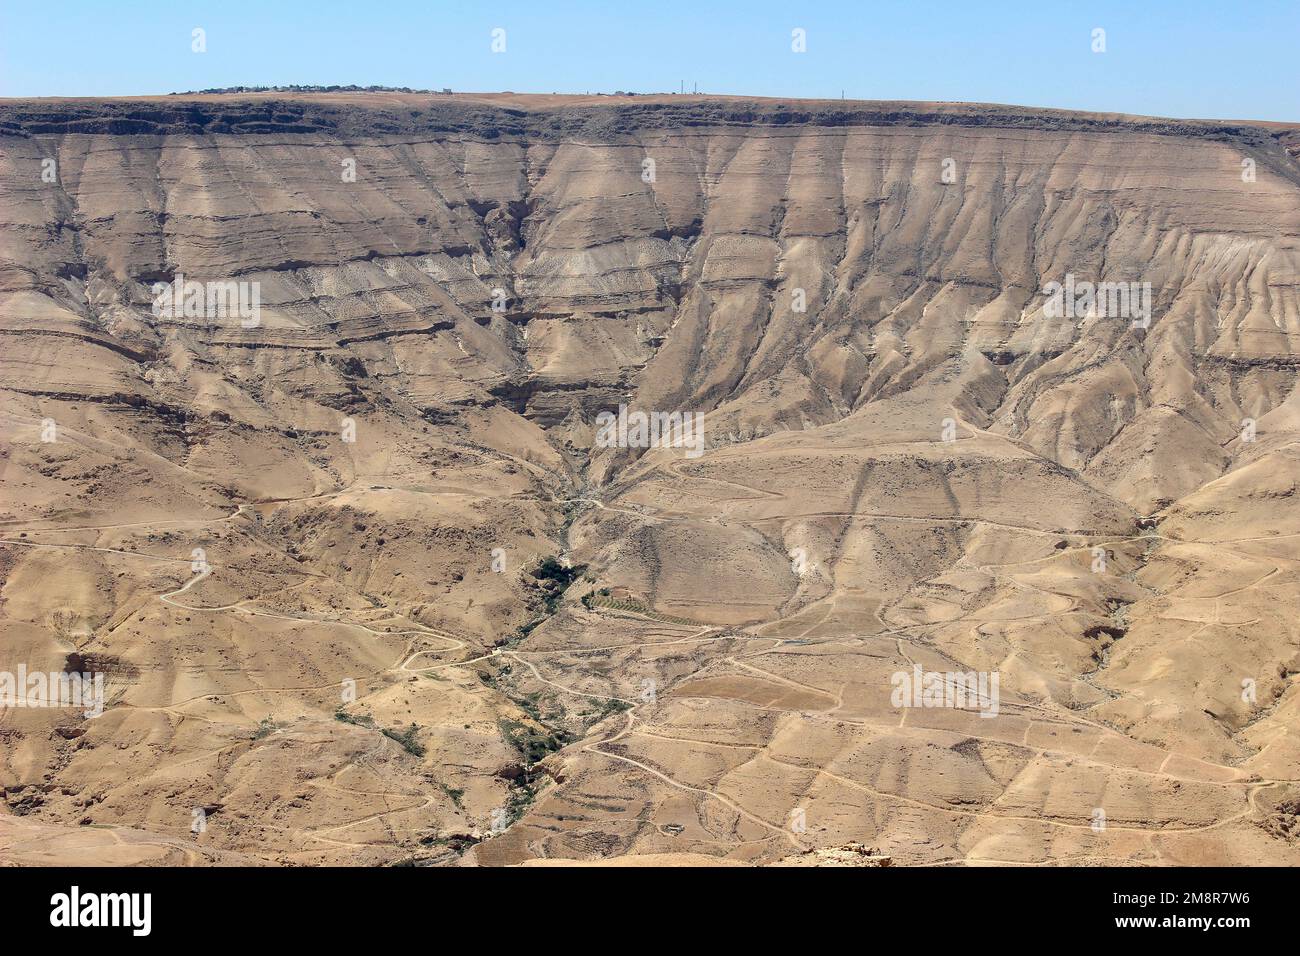 Rock Sedimentary Layers on the edge of Wadi Mujib Canyon, Jordan Stock Photo